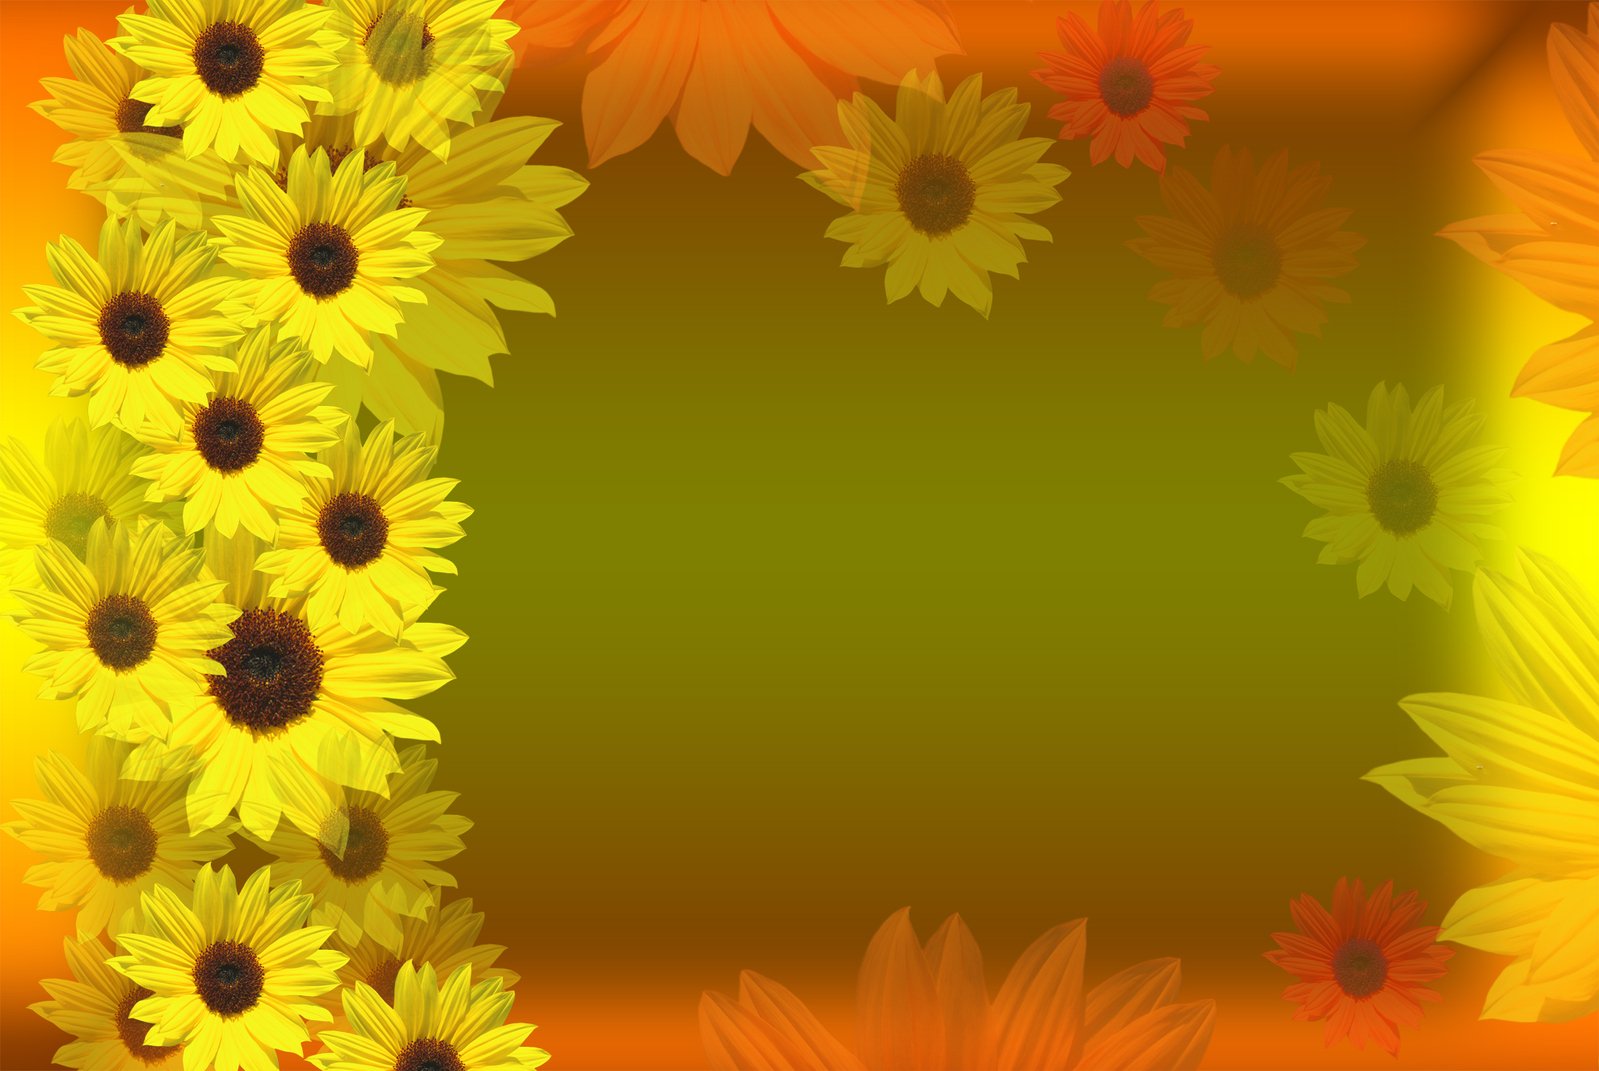 bordure de papier peint tournesol,tournesol,jaune,fleur,tournesol,plante